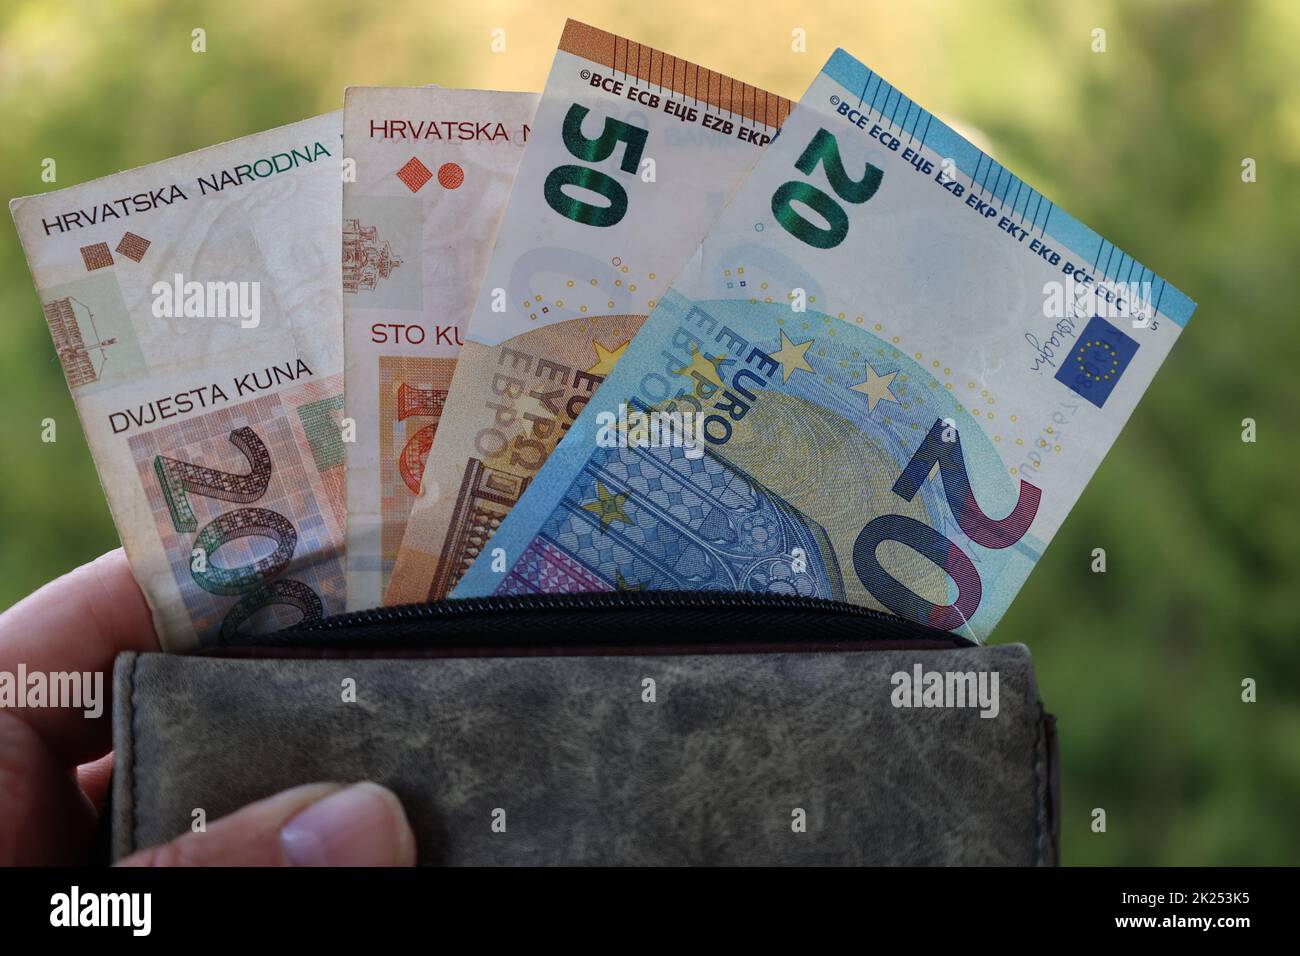 Zum 1. Januar 2023 darf Kroatien /Croatia den Euro als offizielle Währung einführen, der dann die Kuna als Landeswährung ablösen wird. Stock Photo